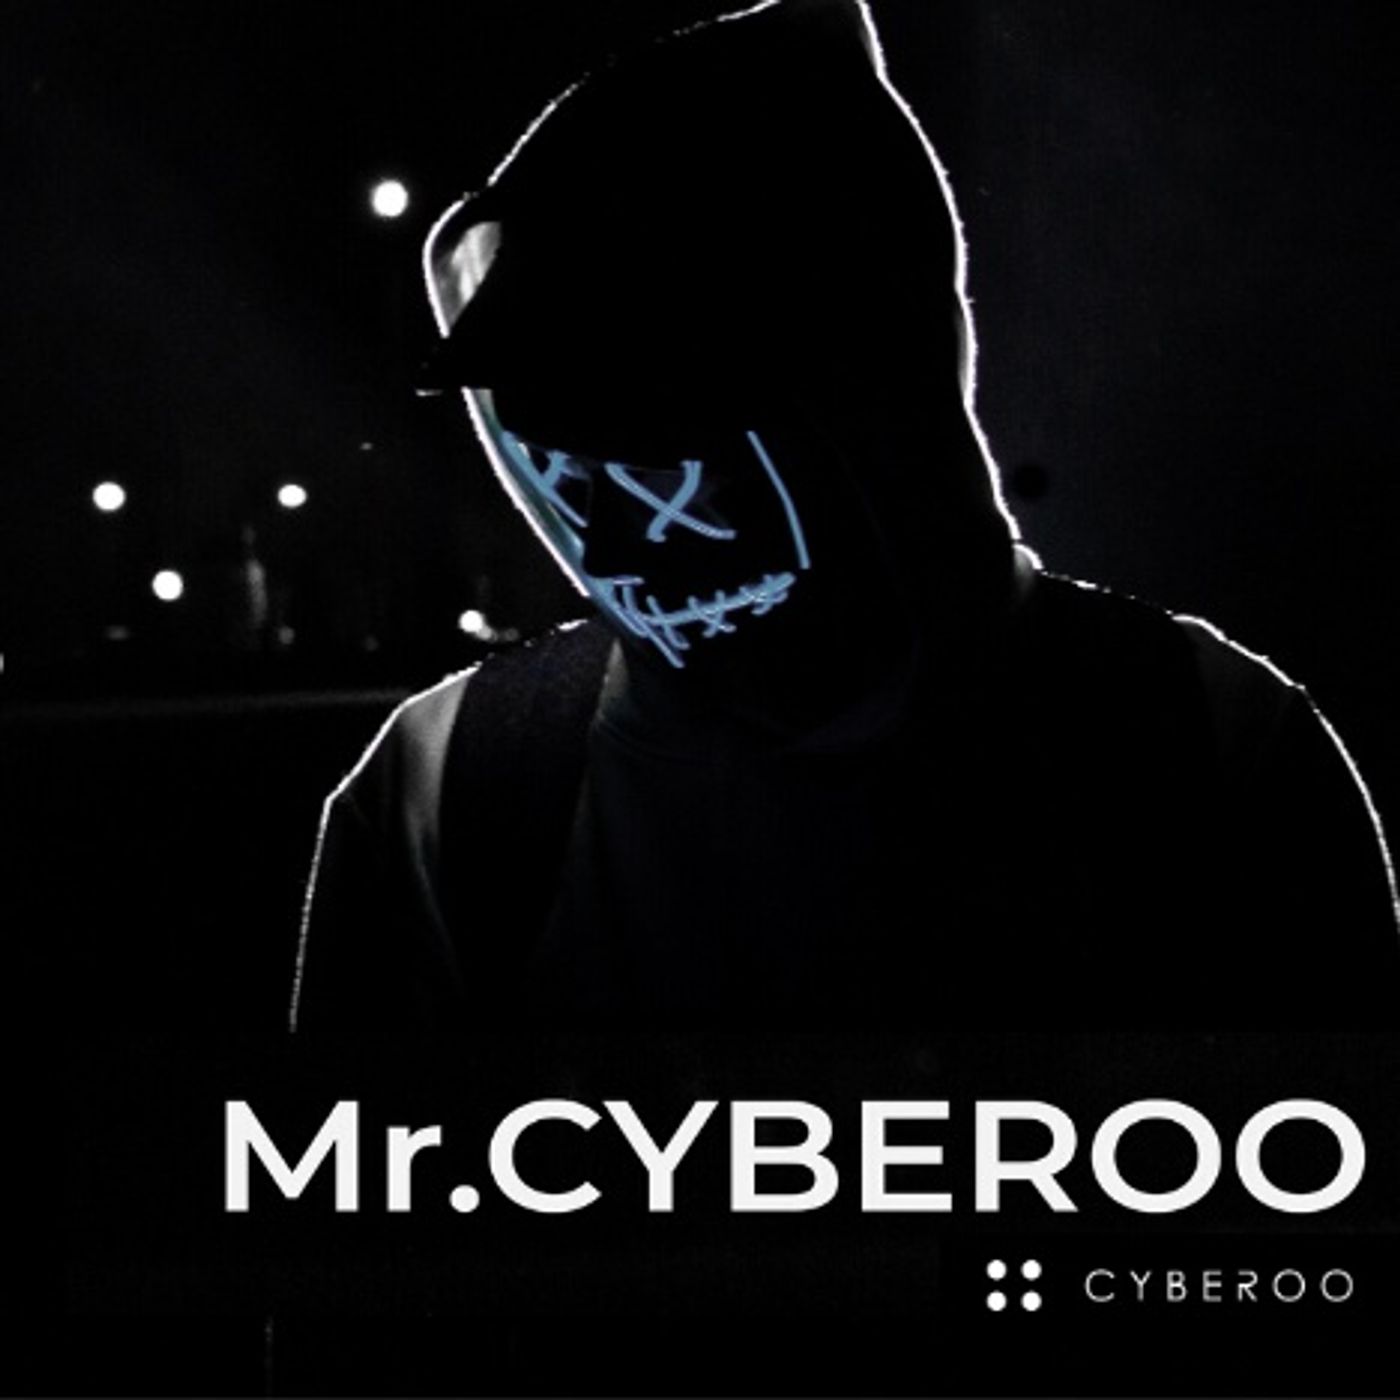 MR. CYBEROO | IL TRAILER